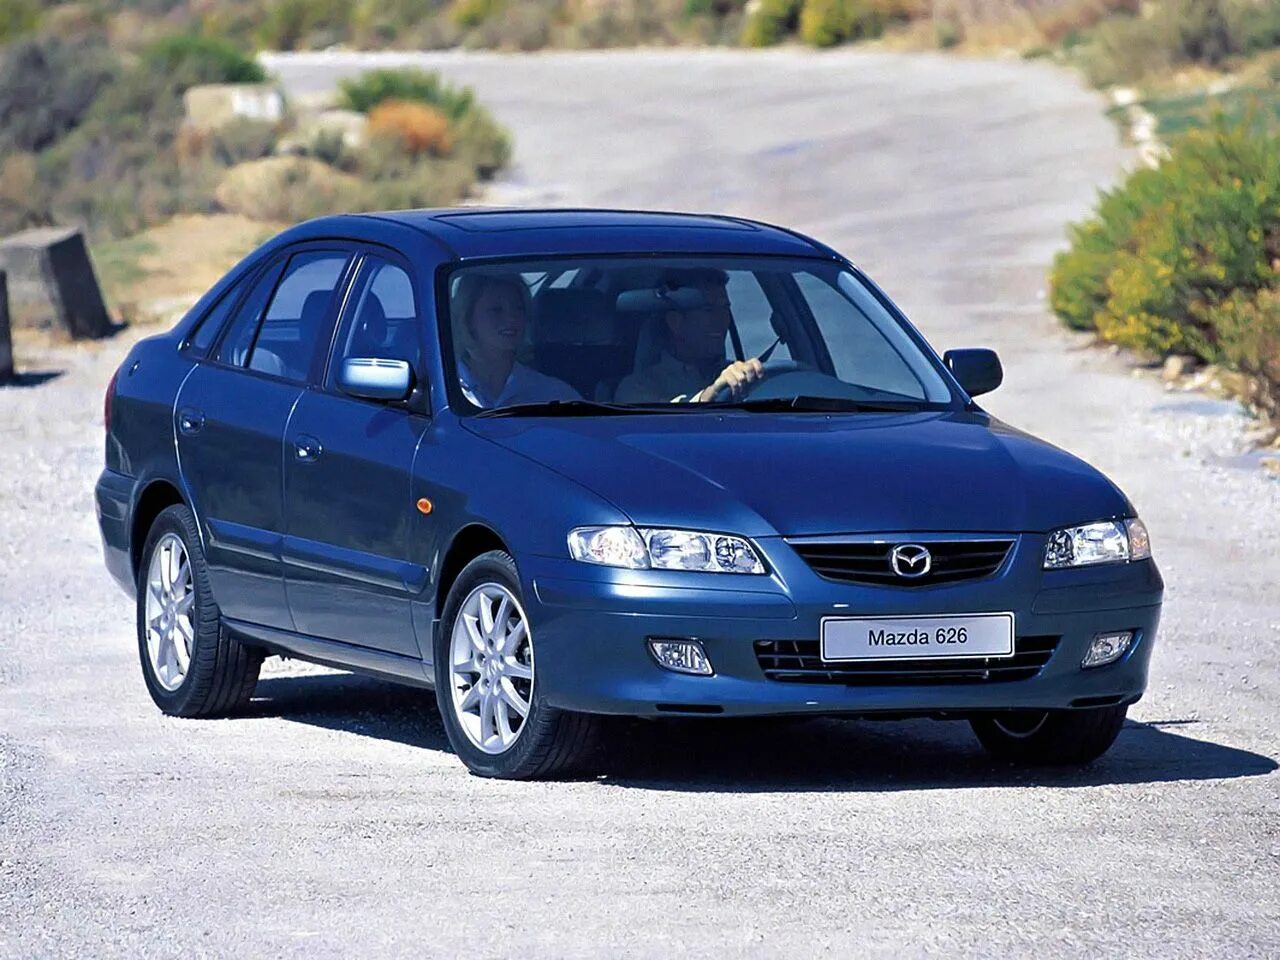 Mazda 626 gf. Mazda 626 v (gf). Мазда 626 2.0. Mazda 626 gf 2002. Мазда 626 хэтчбек